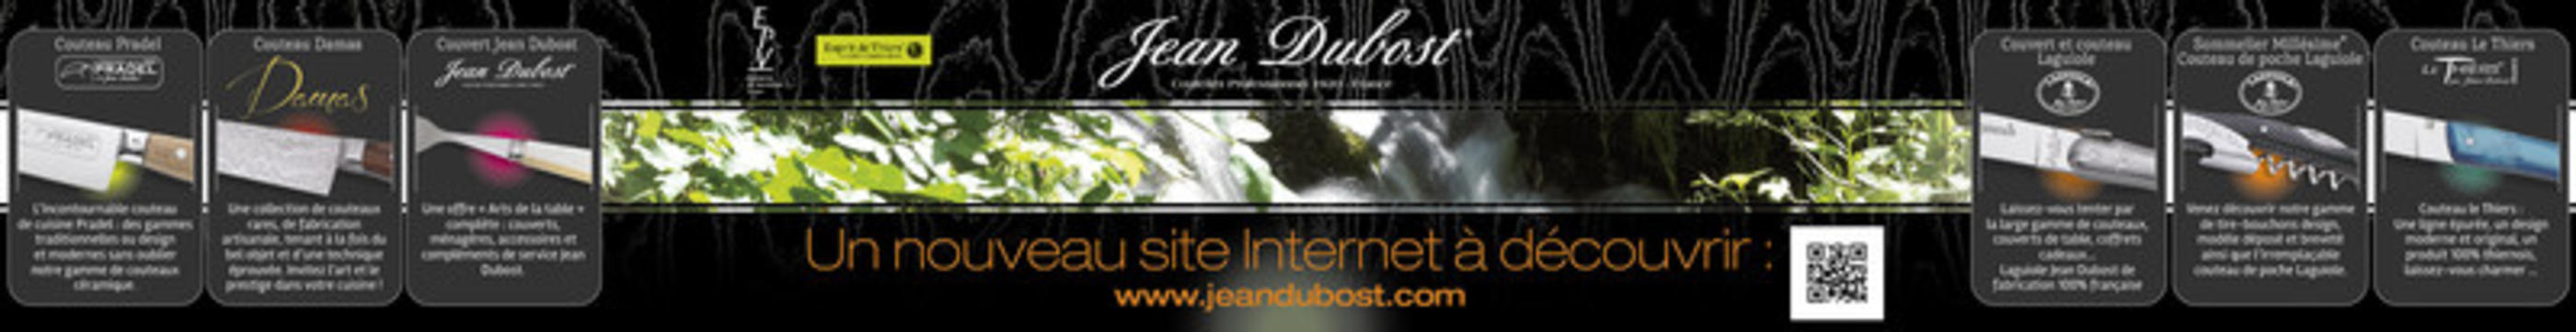 Le site web Jean Dubost plébiscité par la presse !